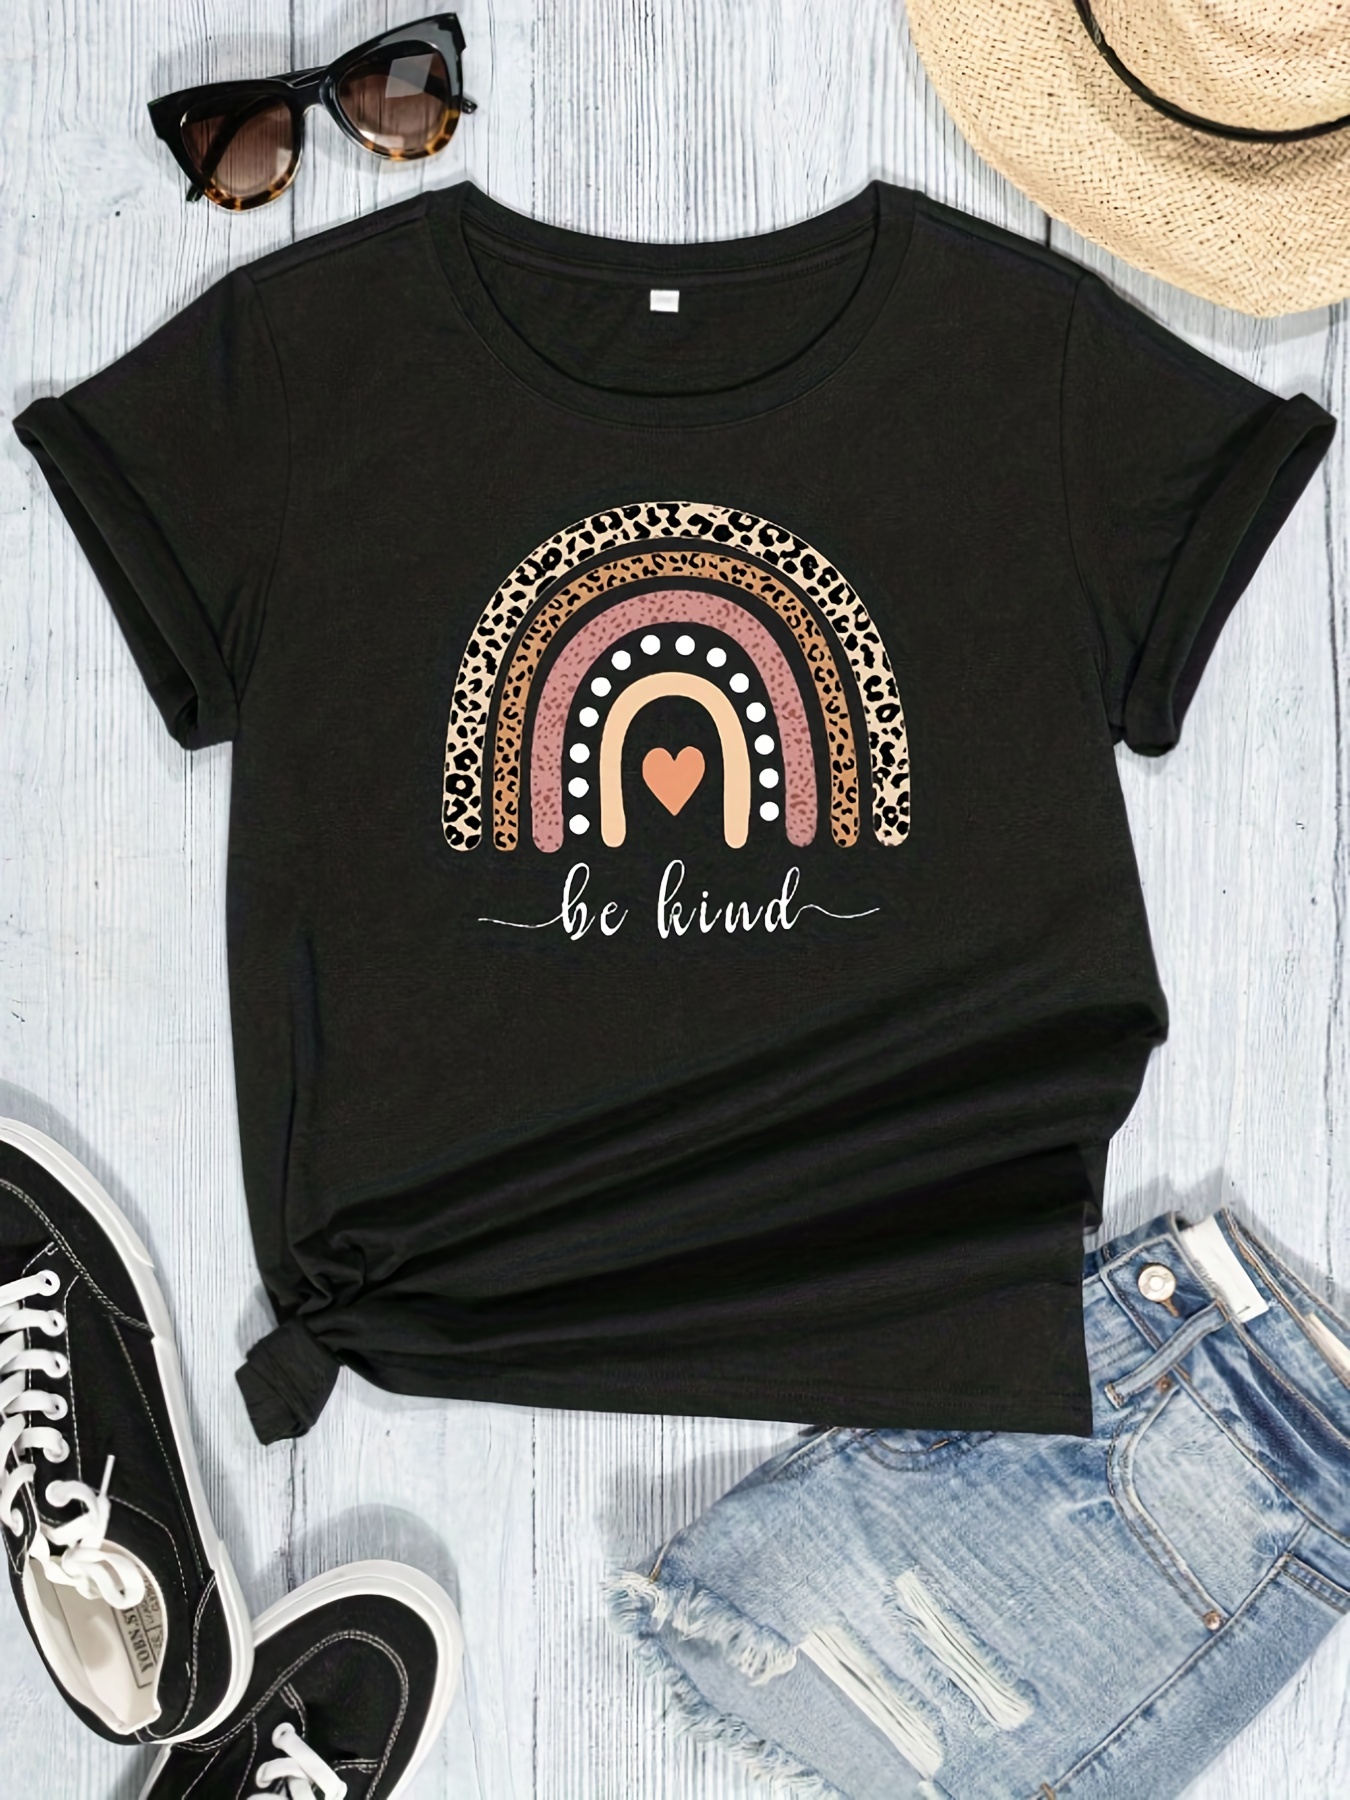 T-shirt Imprimé Léopard Arc-en-ciel Et Slogan, Haut D'été Décontracté À Manches Courtes Et Col Rond, Vêtements Pour Femmes